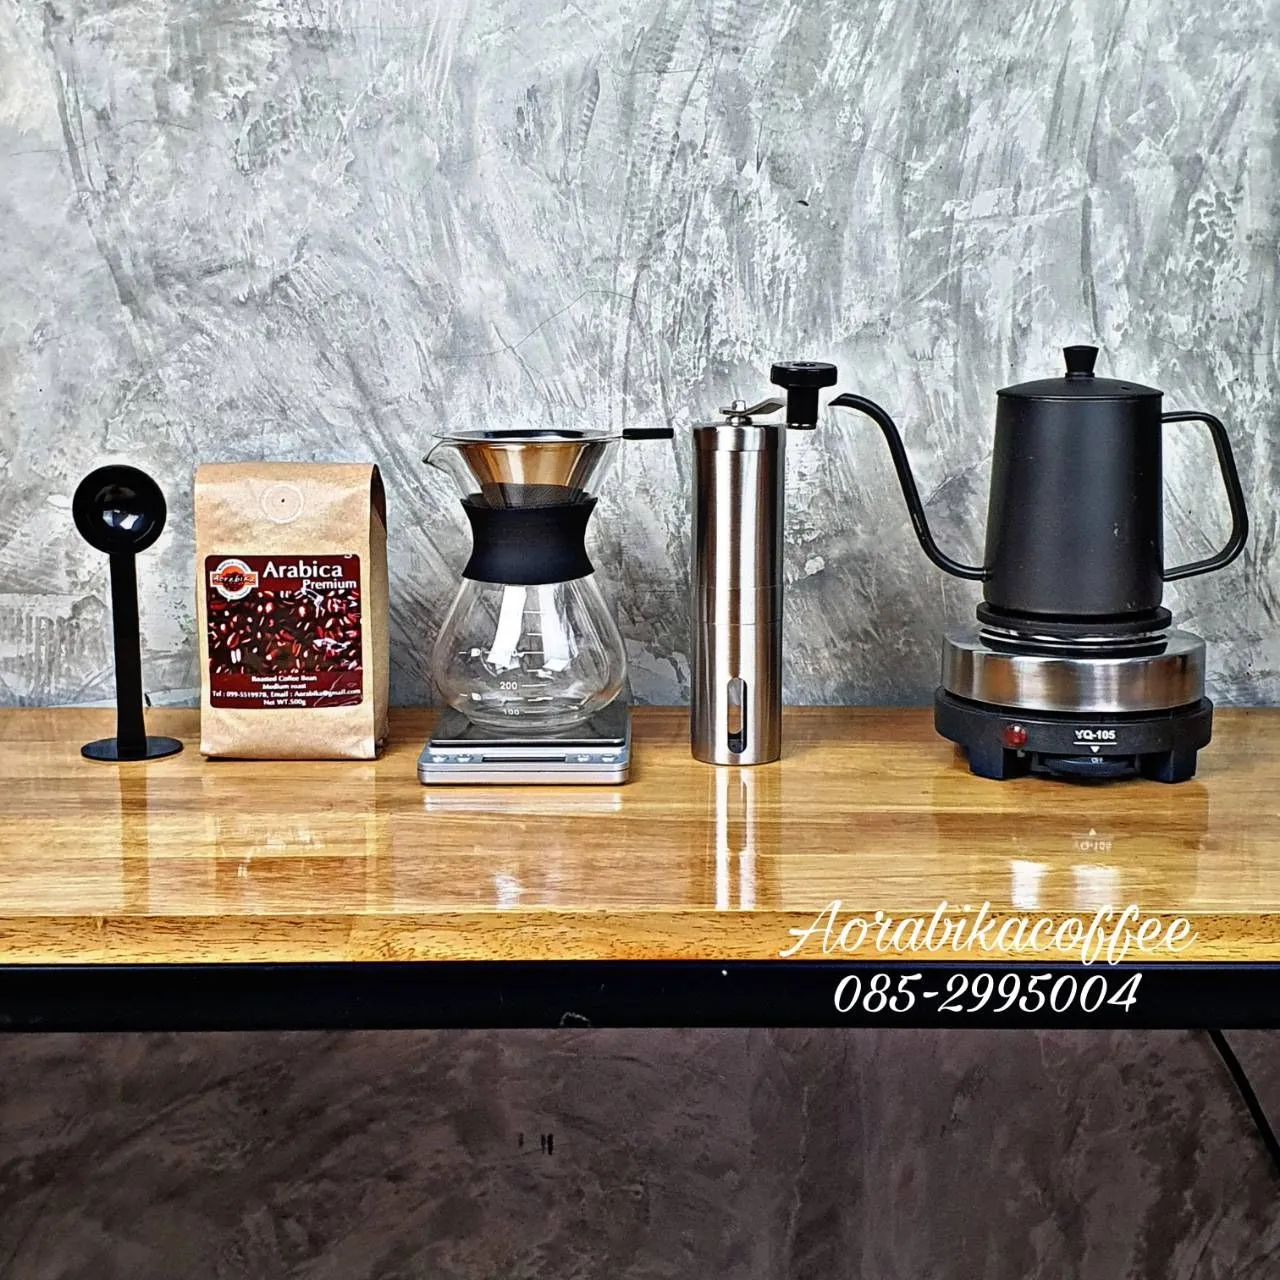 ชุด Drip coffee ขนาด 400ml+ที่กรองสแตนเลส+ที่บดสแตนเลส+ตาชั่งดิจิตอล+กาดริป 600ml+เตาไฟฟ้า+ช้อน+กาแฟ